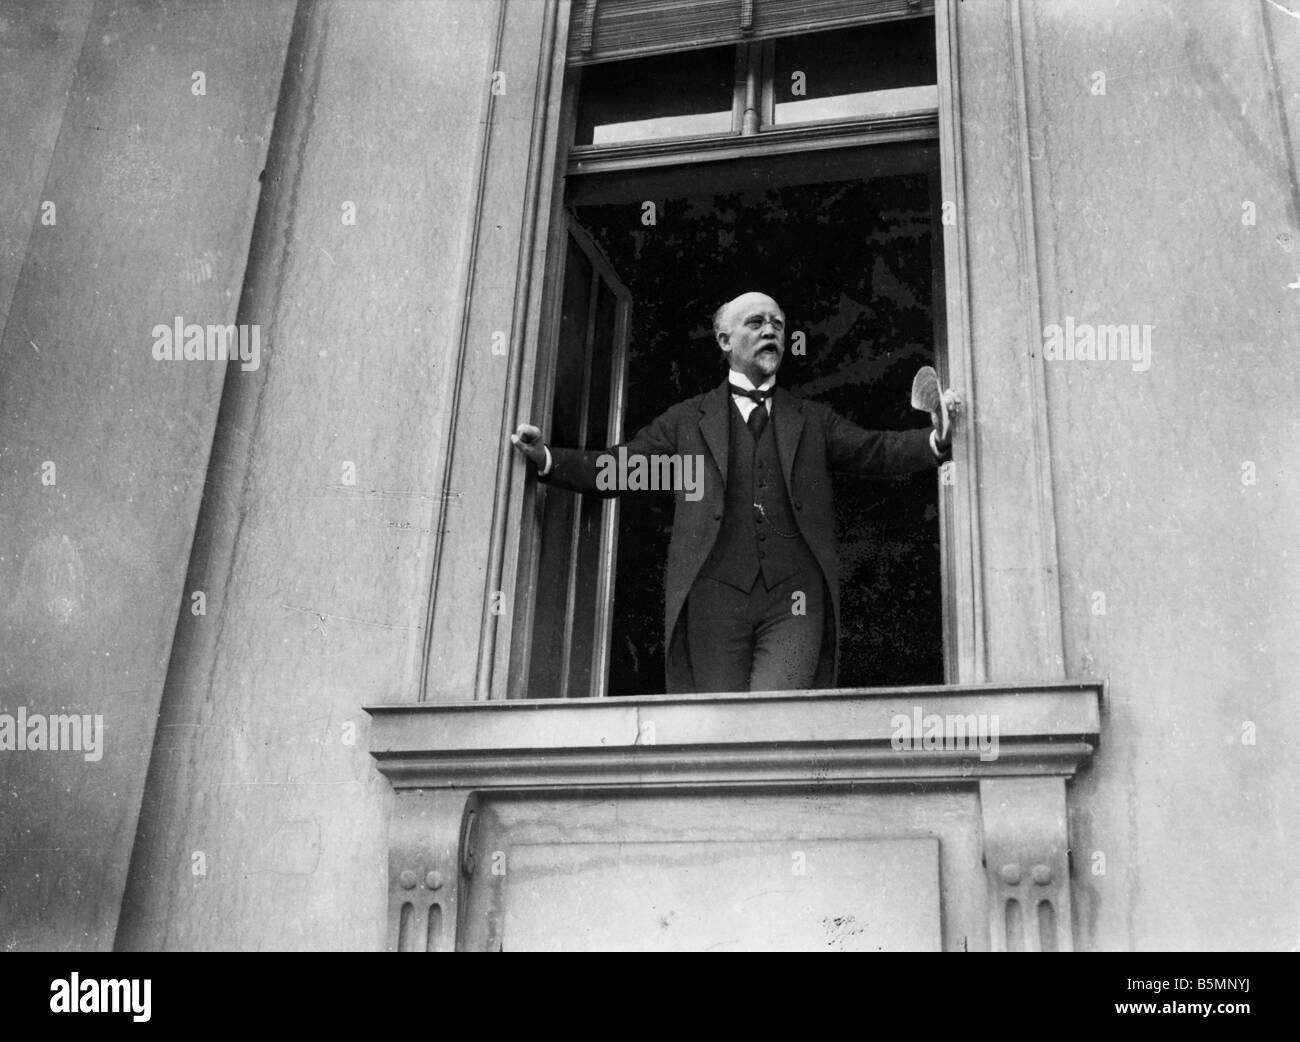 8 1918 119 A1 21 19 1918 Révolution Discours de Scheidemann Révolution de Novembre 1918 La Friedrich Ebert devient chancelier du Reich après Banque D'Images